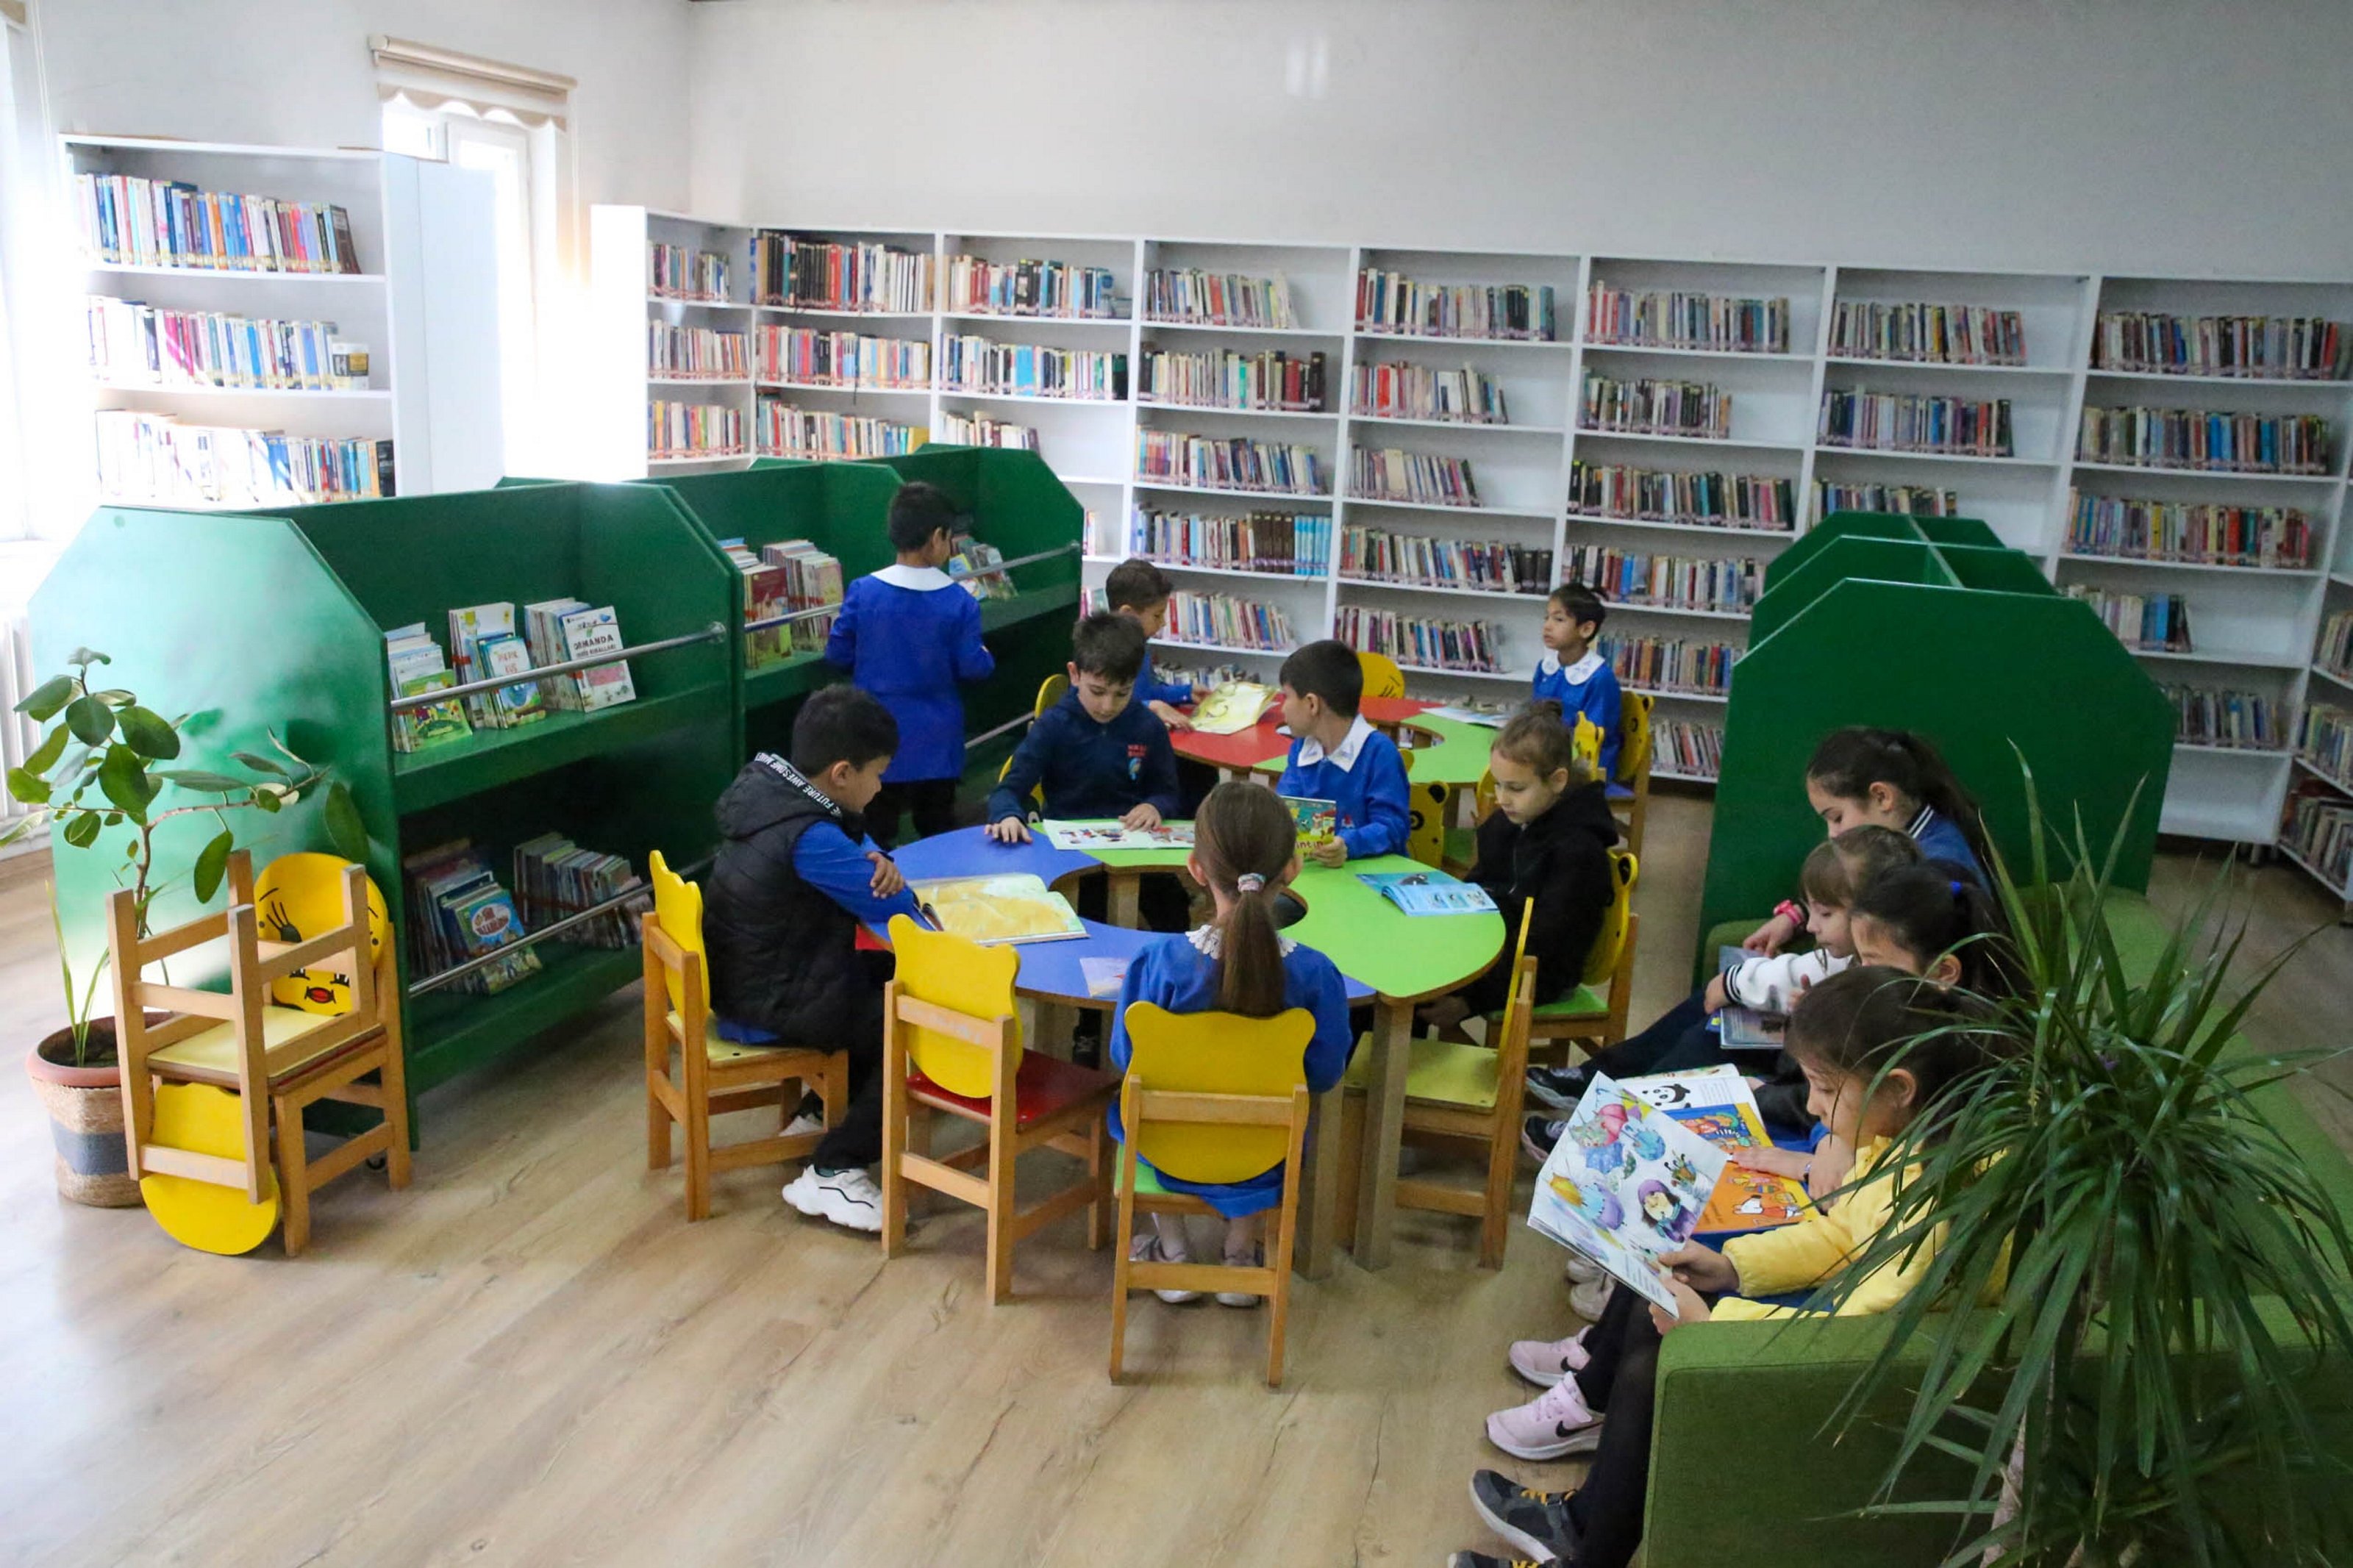 Türkiye'deki “Tarım Kütüphaneleri” Yeşil Kütüphane Ödülü'nde ilk 5 kütüphane arasında yer aldı